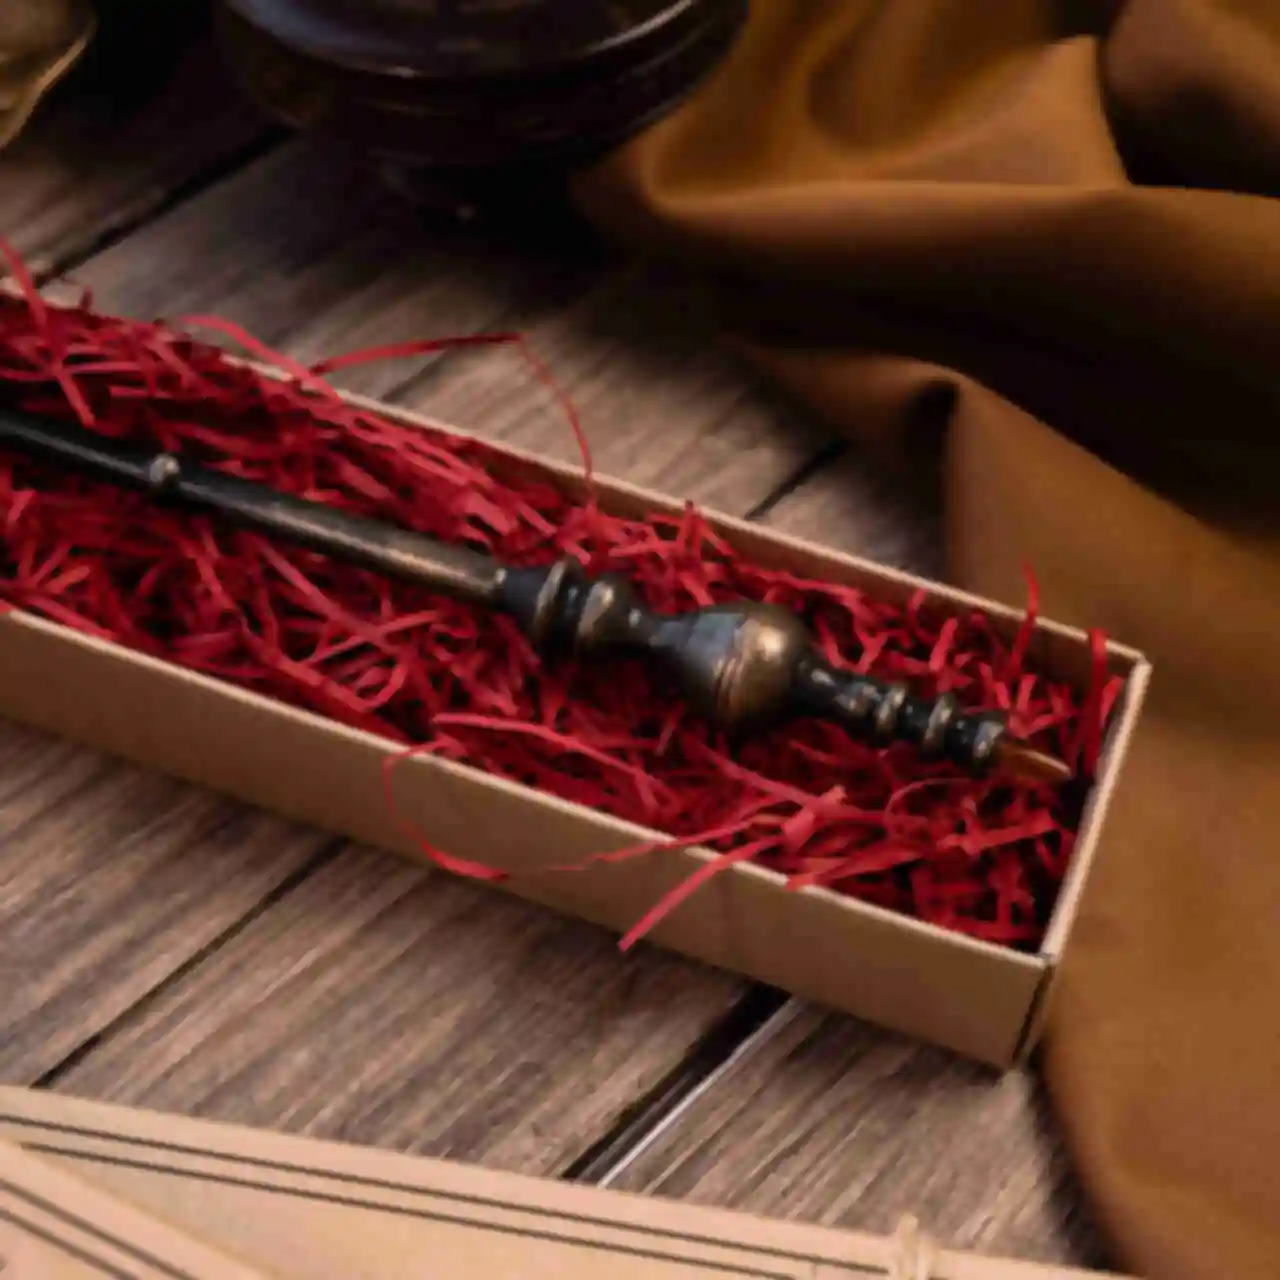 Волшебная палочка Минервы Макгонагалл ⚡️ Minerva McGonagall's Wand ⚡️ Сувениры Гарри Поттер ⚡️ Harry Potter. Фото №1